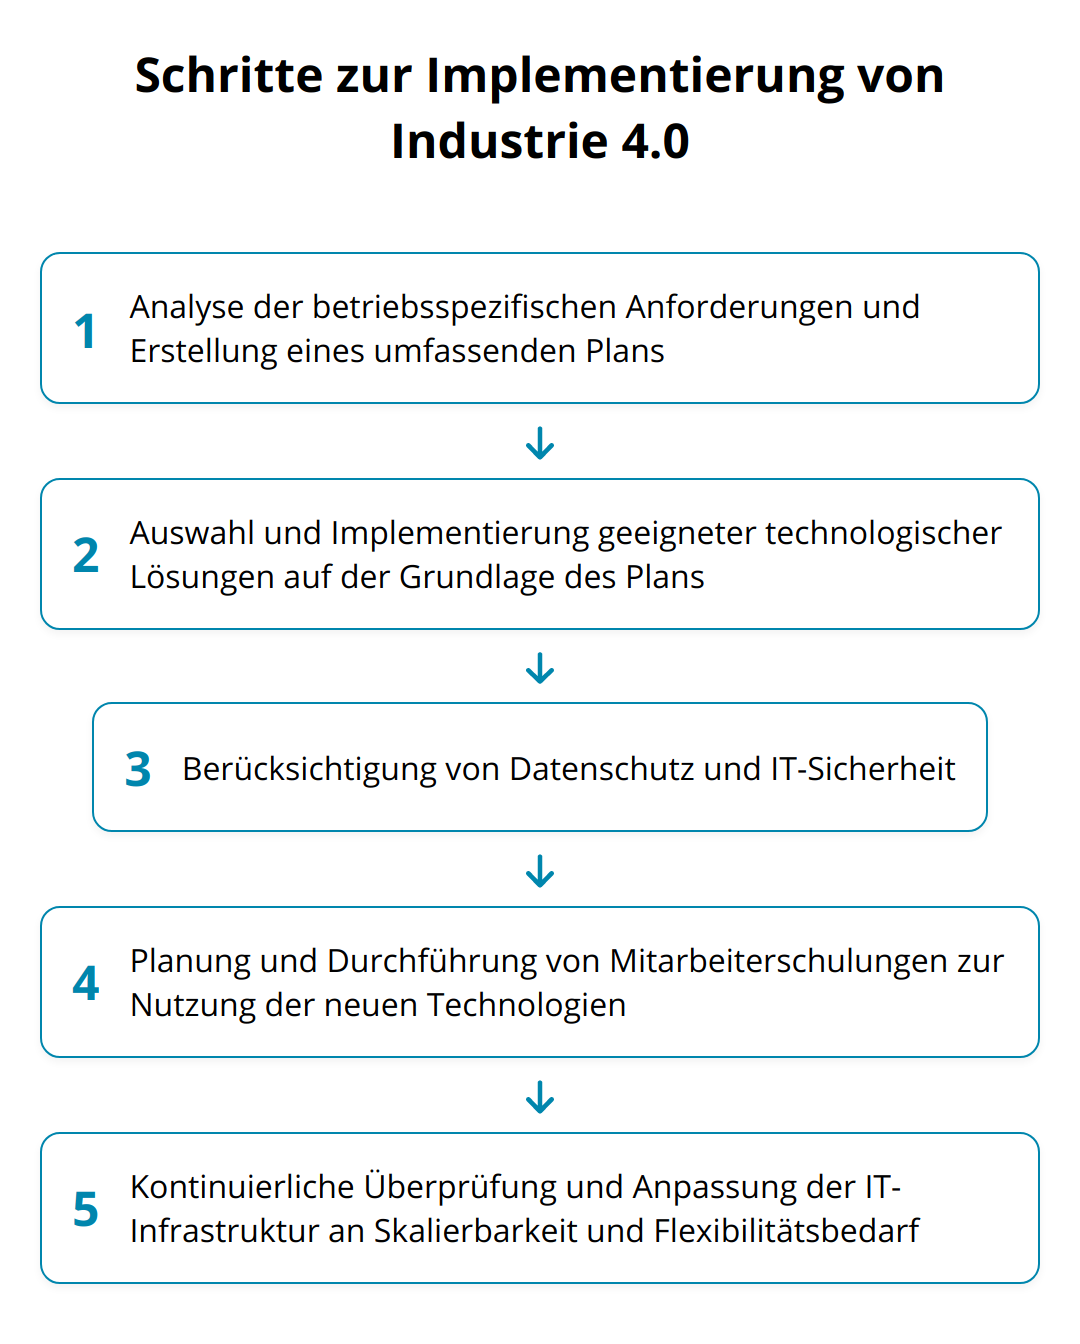 Flow Chart - Schritte zur Implementierung von Industrie 4.0